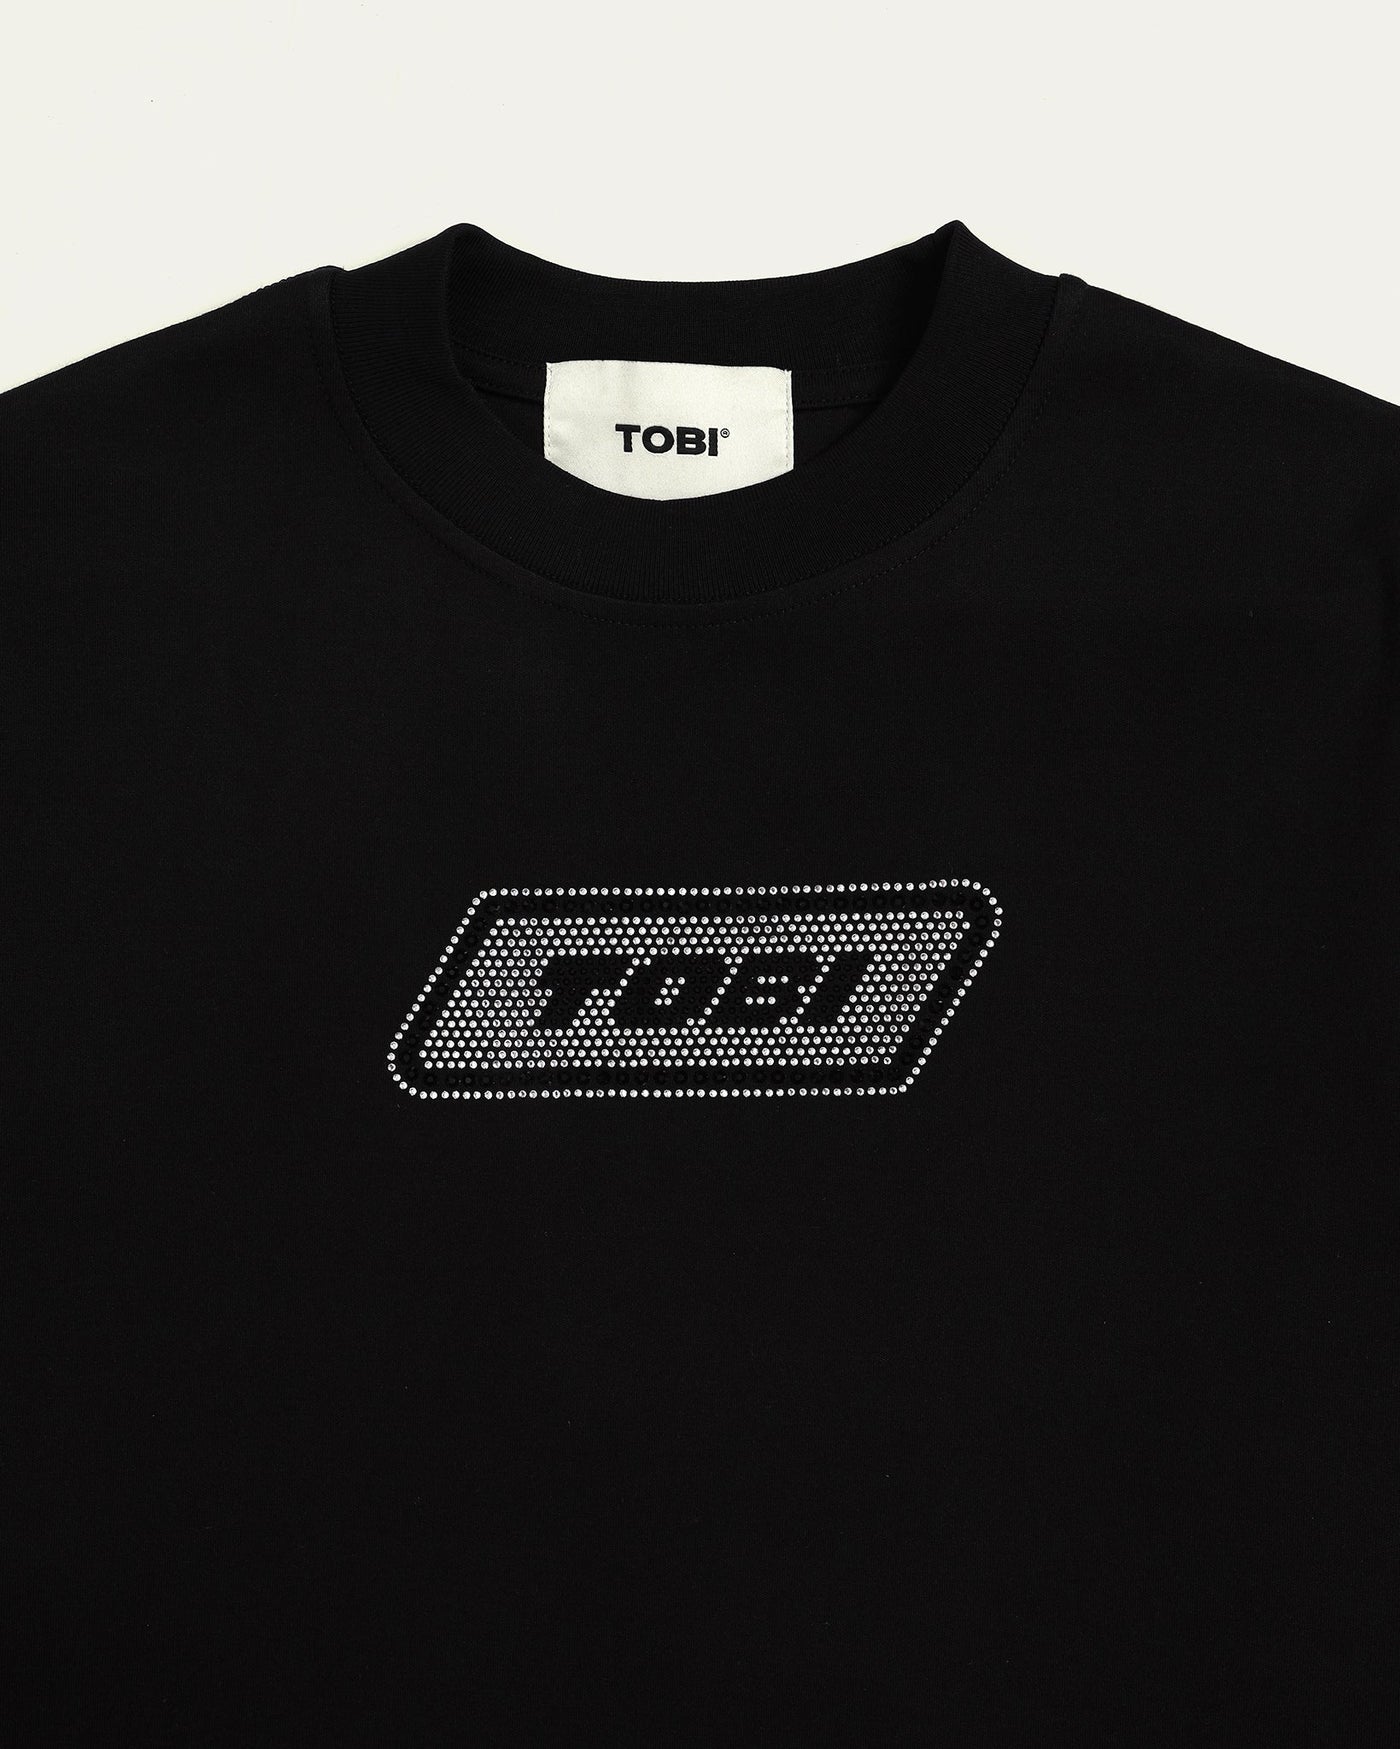 TOBI®Box Logo Bling T-shirt - Black - TOBI